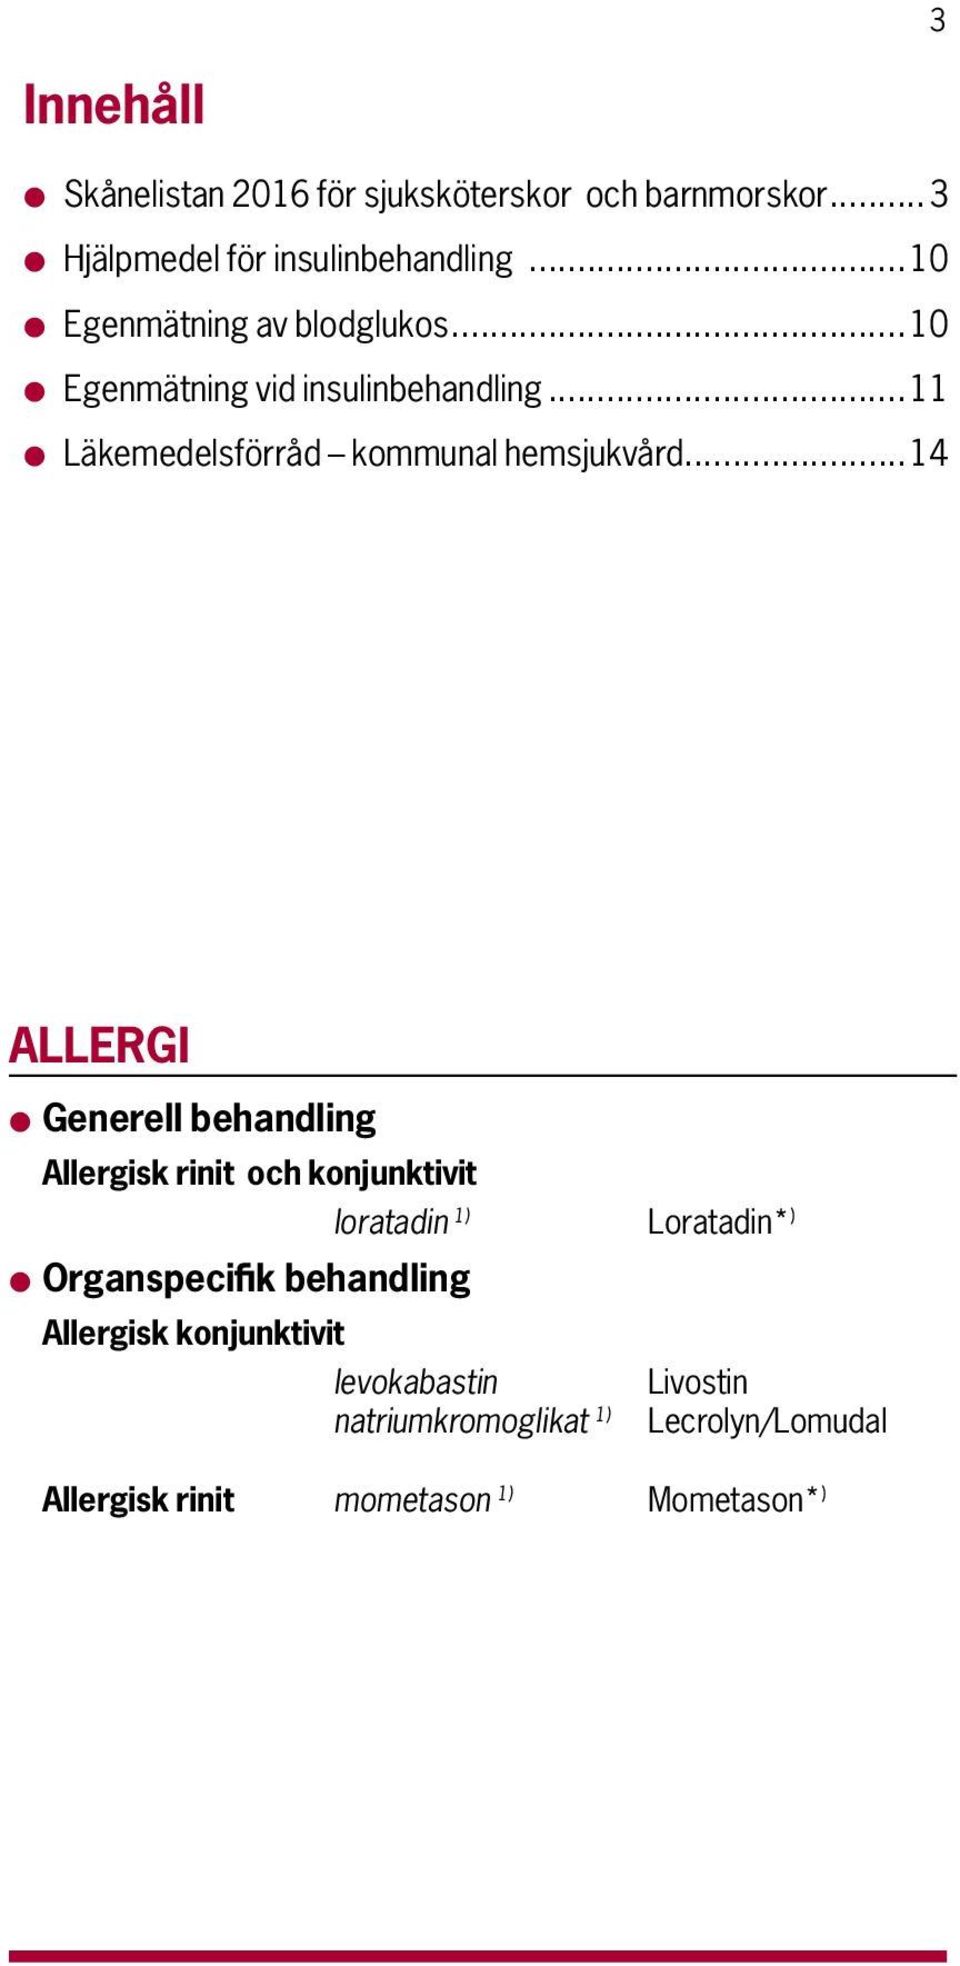 ..14 ALLERGI l Generell behandling Allergisk rinit och konjunktivit loratadin 1) Loratadin* ) l Organspecifik